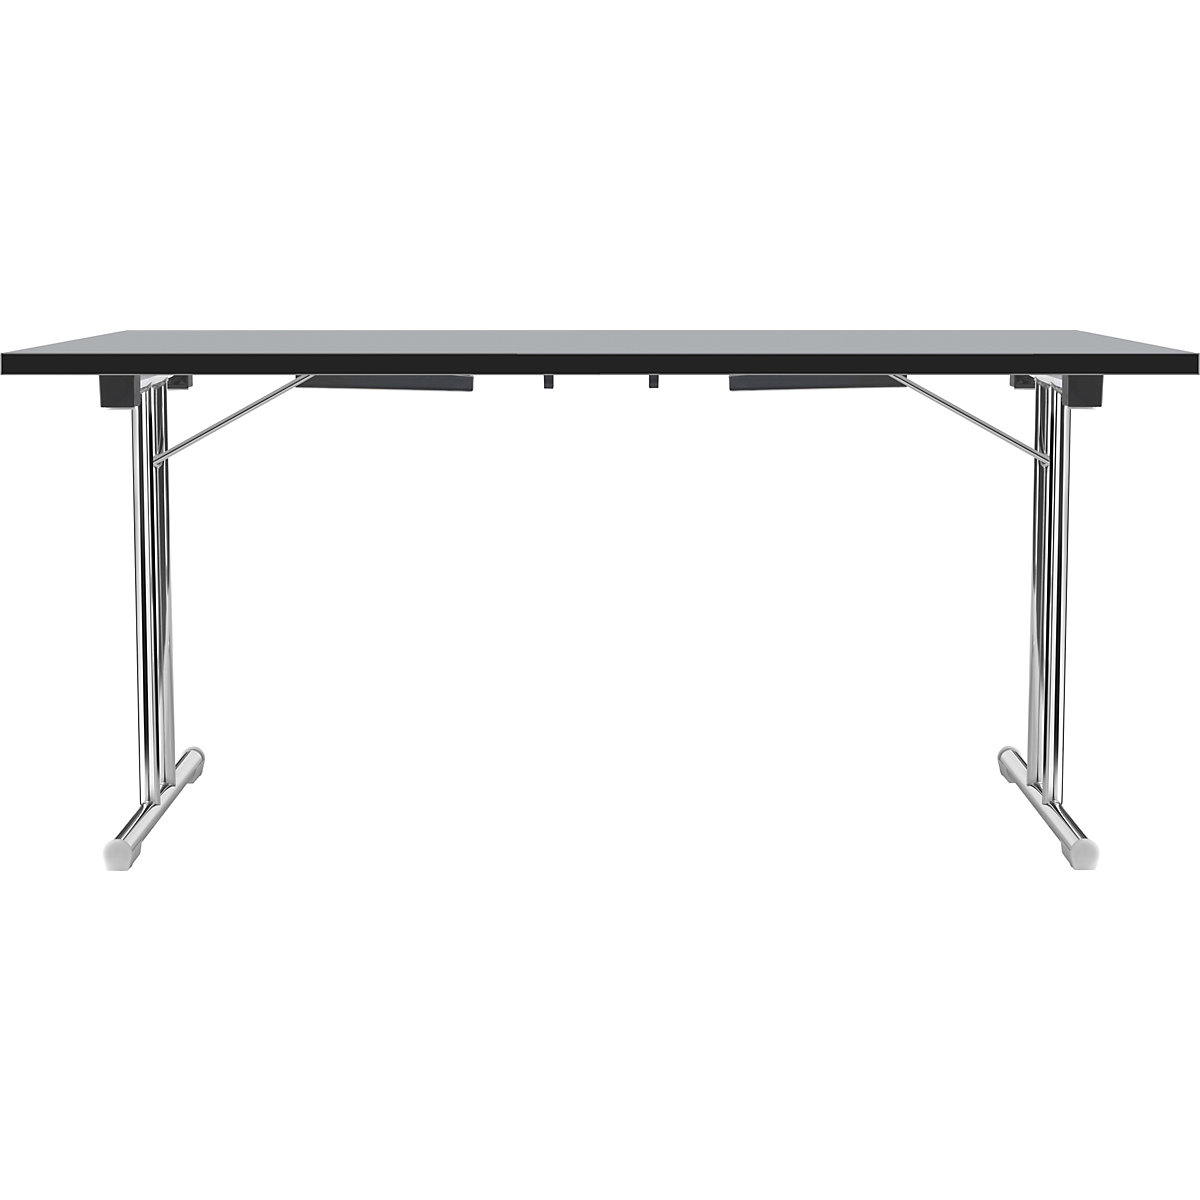 Zložljiva miza z dvojnim podnožjem v obliki črke T, ogrodje iz okrogle jeklene cevi, kromirano, svetlo siva/črna, ŠxG 1400 x 700 mm-14